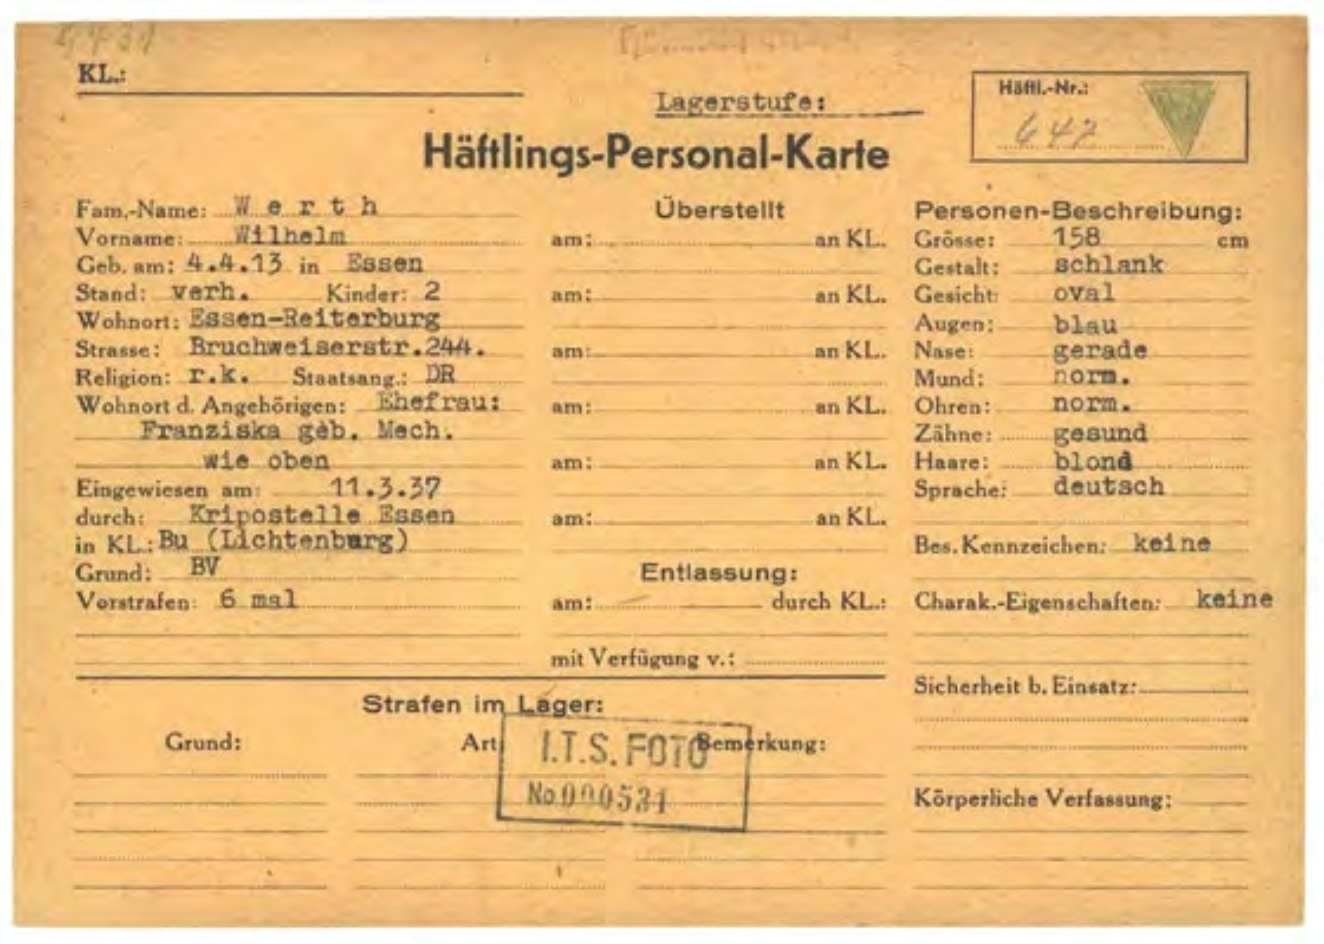 Scan der Häftlingspersonalkarte von Willy Werth